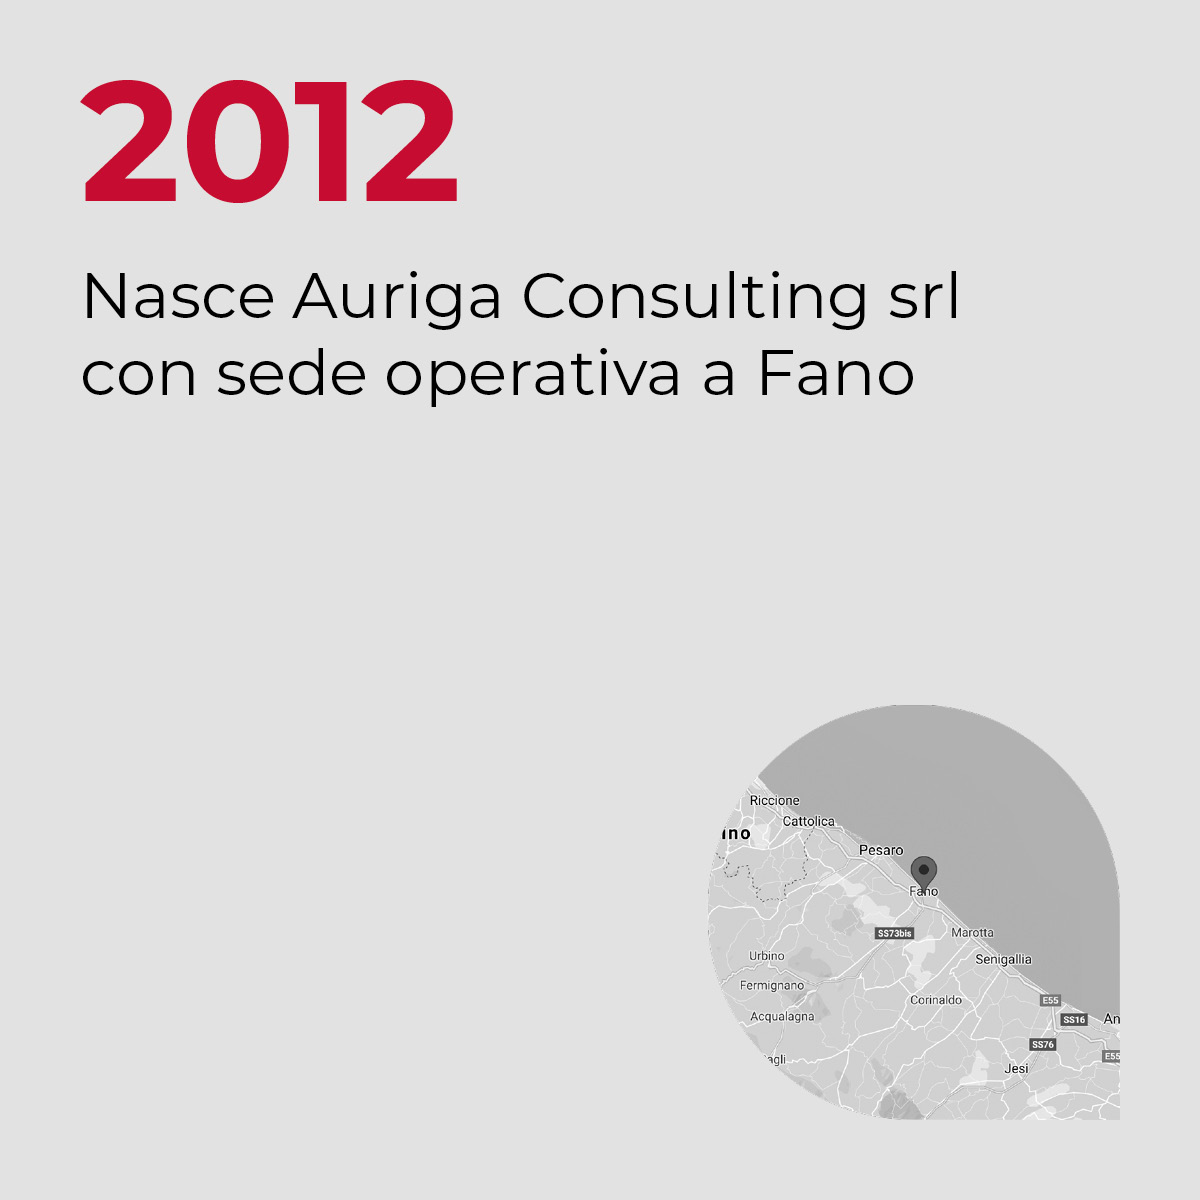 2012, Nasce Auriga Consulting srl con sede operativa a Fano